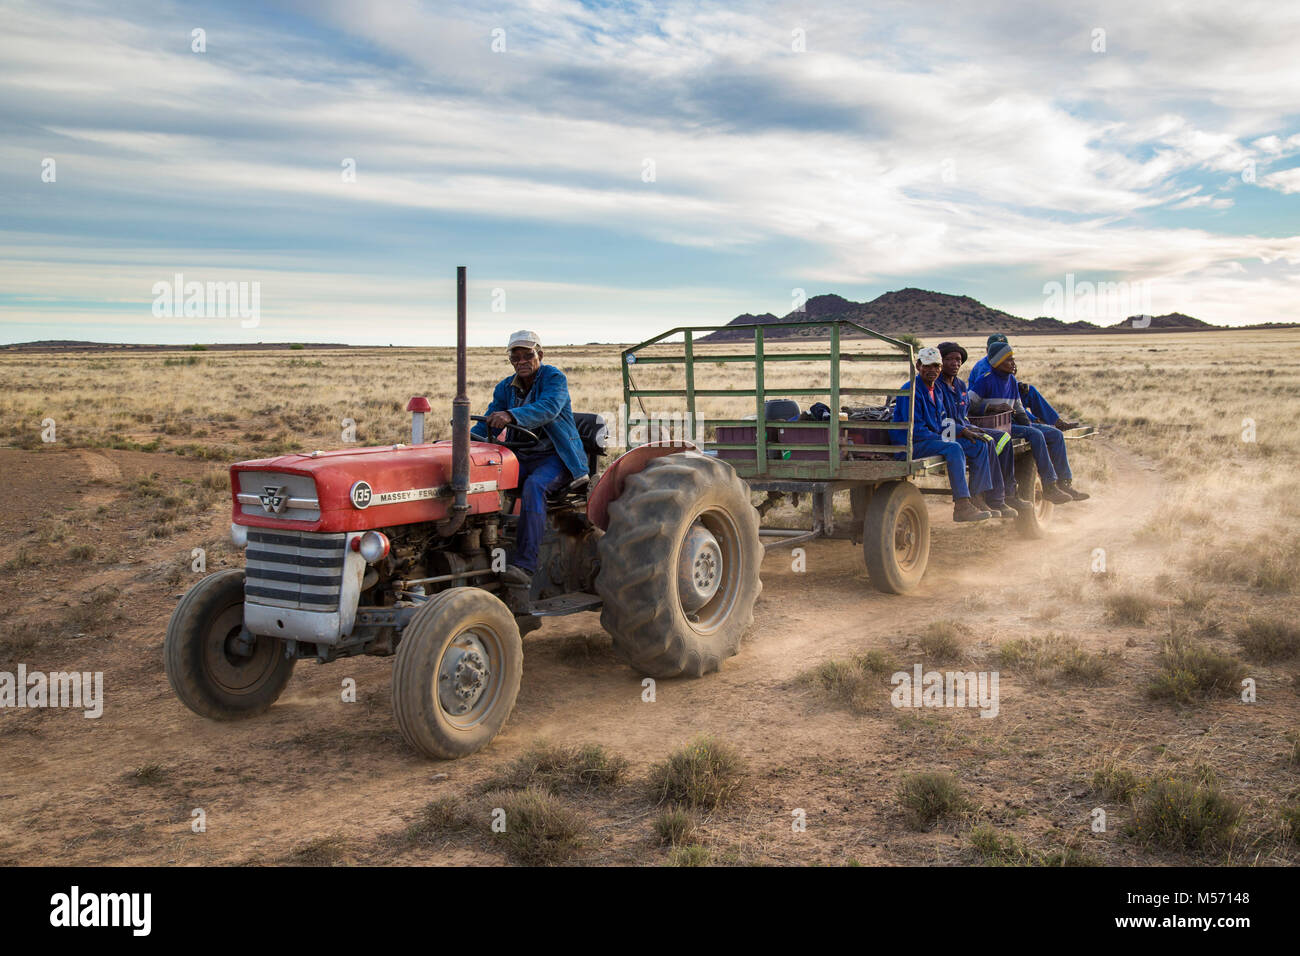 Los trabajadores agrícolas regresan en el tractor y el remolque después de un día de trabajo Foto de stock